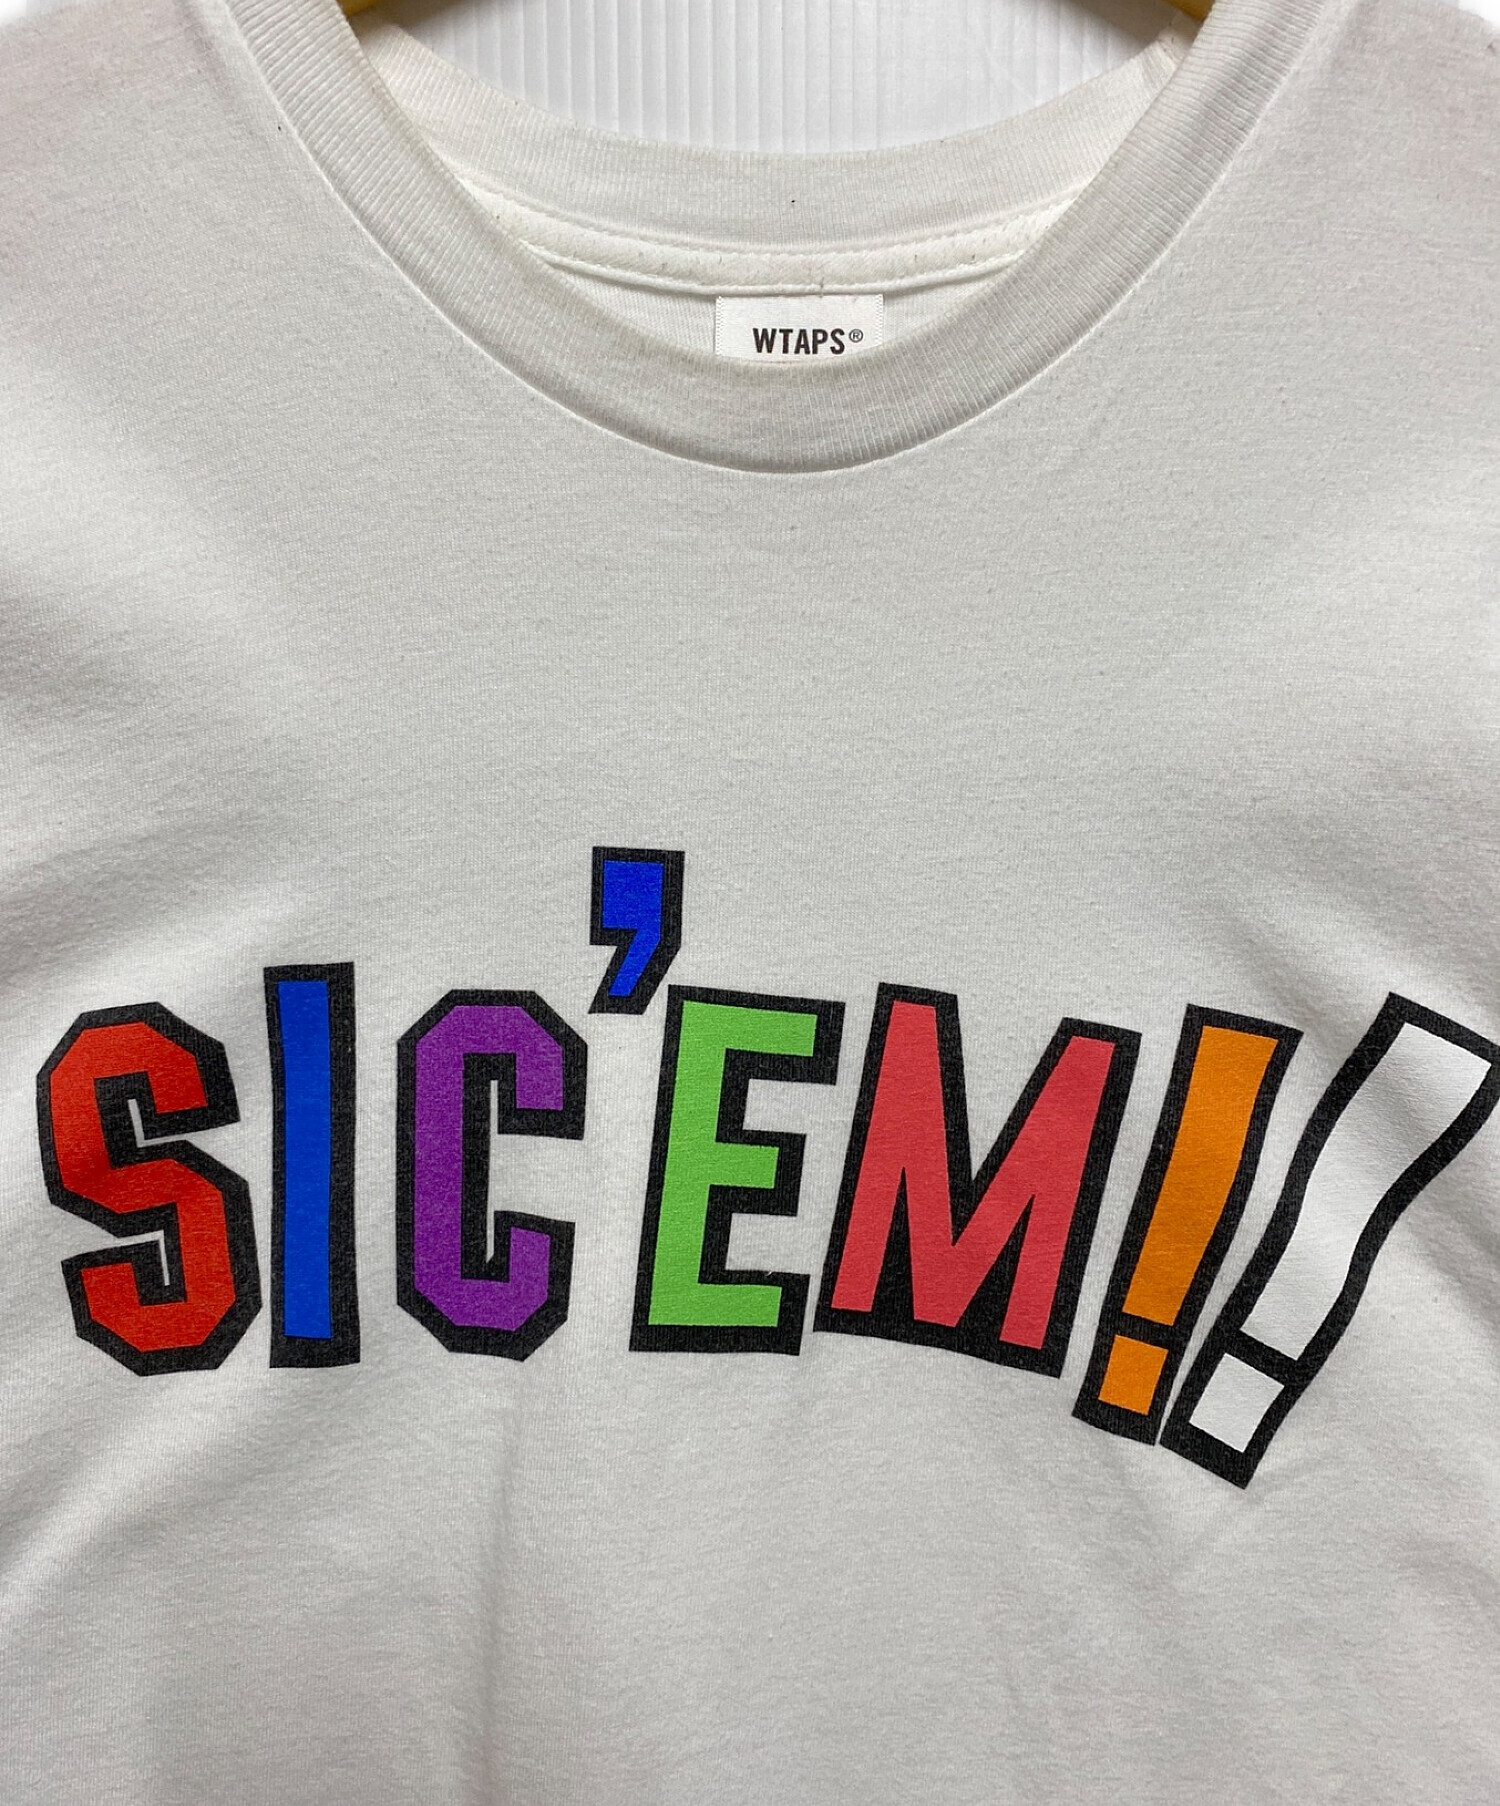 SUPREME (シュプリーム) WTAPS (ダブルタップス) Sic'em Tシャツ ホワイト サイズ:L